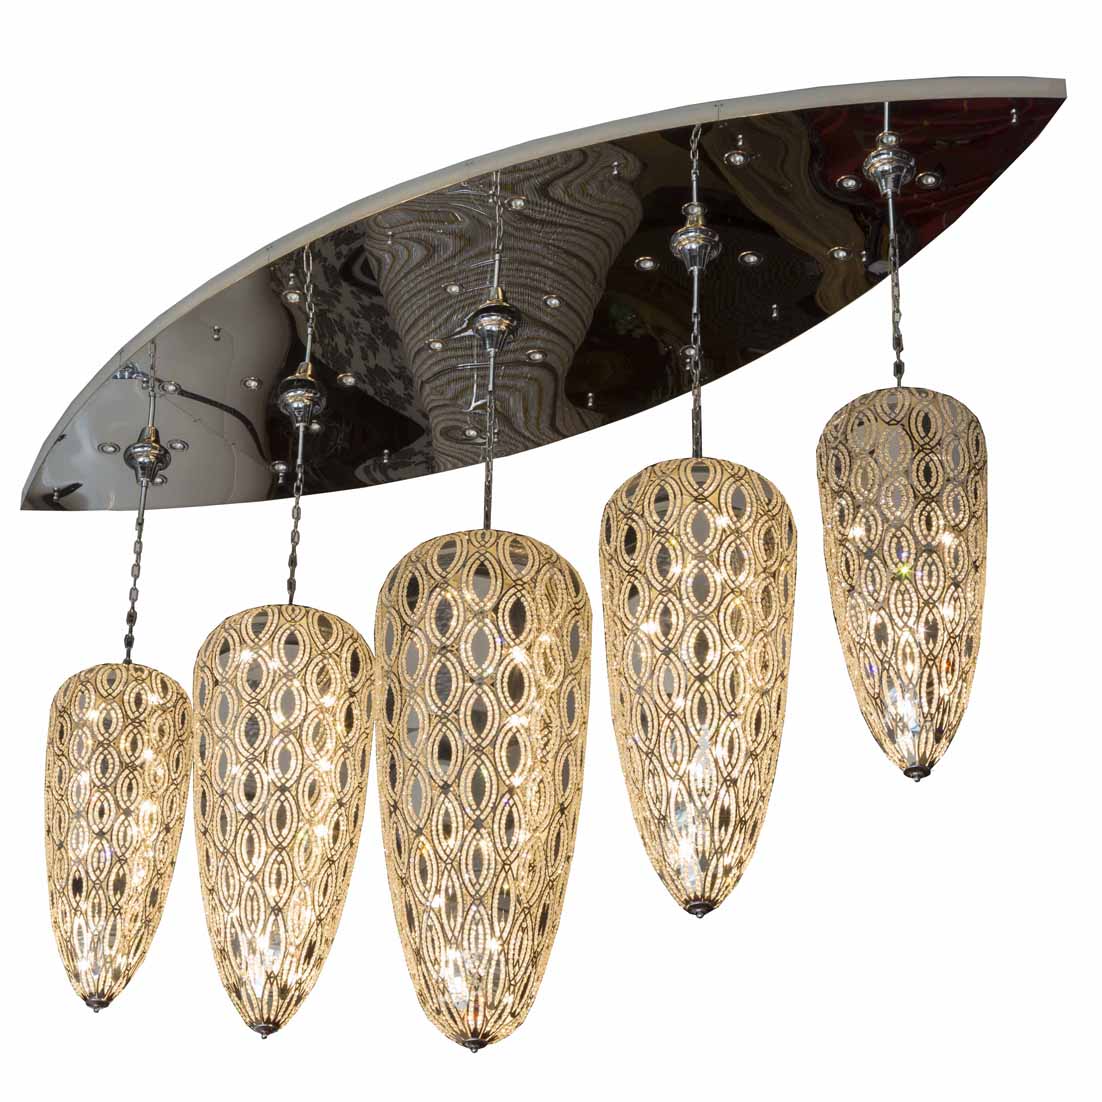 EME modern elegant dining room chandelier chandelier EME LIGHTING Brand